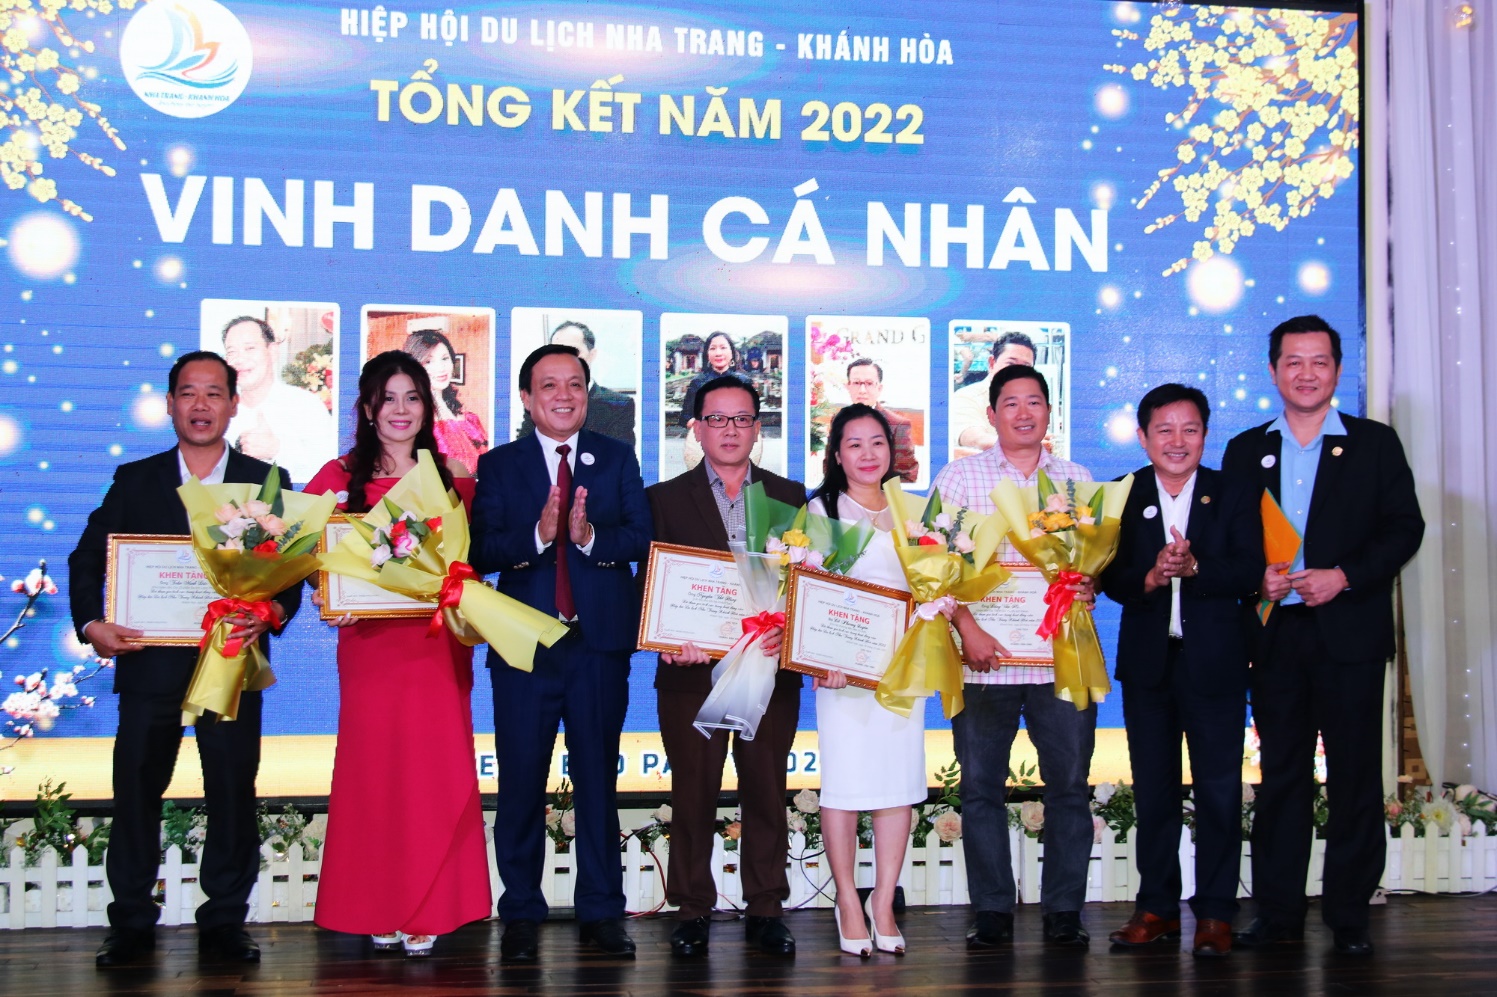 Hiệp hội Du lịch Nha Trang - Khánh Hòa hoạt động sôi nổi sau đại dịch - 2